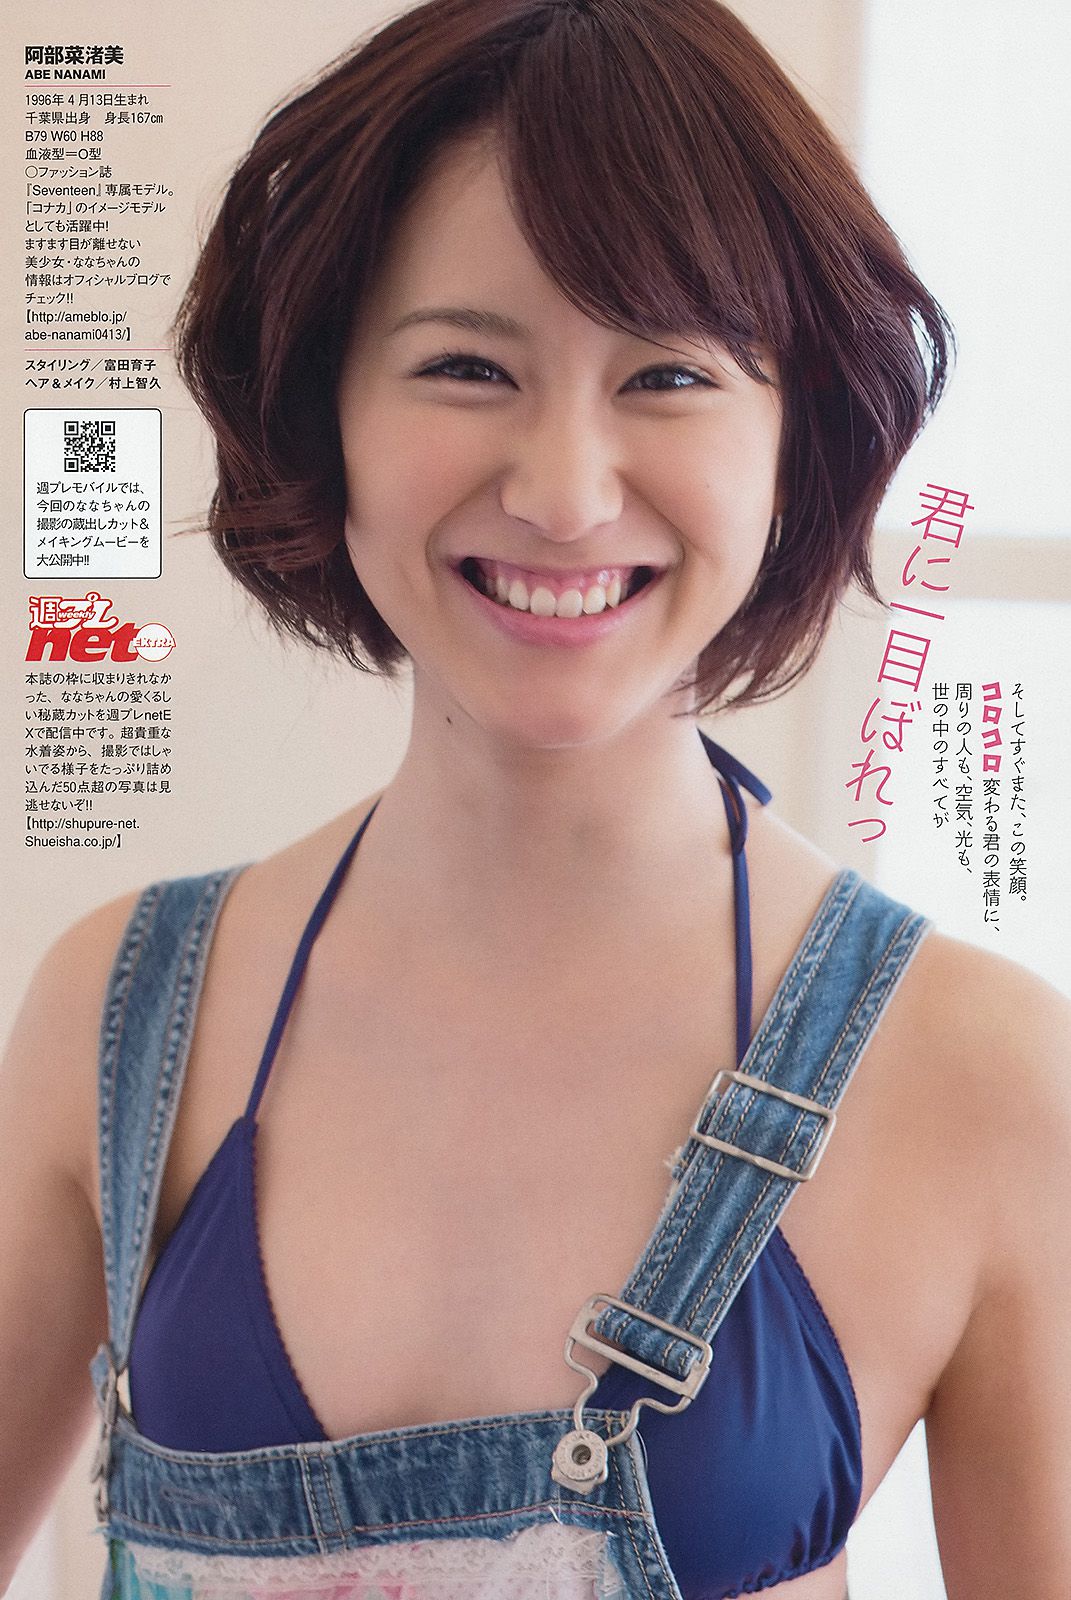 Mitsu Dan Yuki Morisaki Nanami Abe Minami Takahashi Magazine Natsuki Ikeda [Weekly Playboy] 2013 No.15 Photograph Page 44 No.c7965c